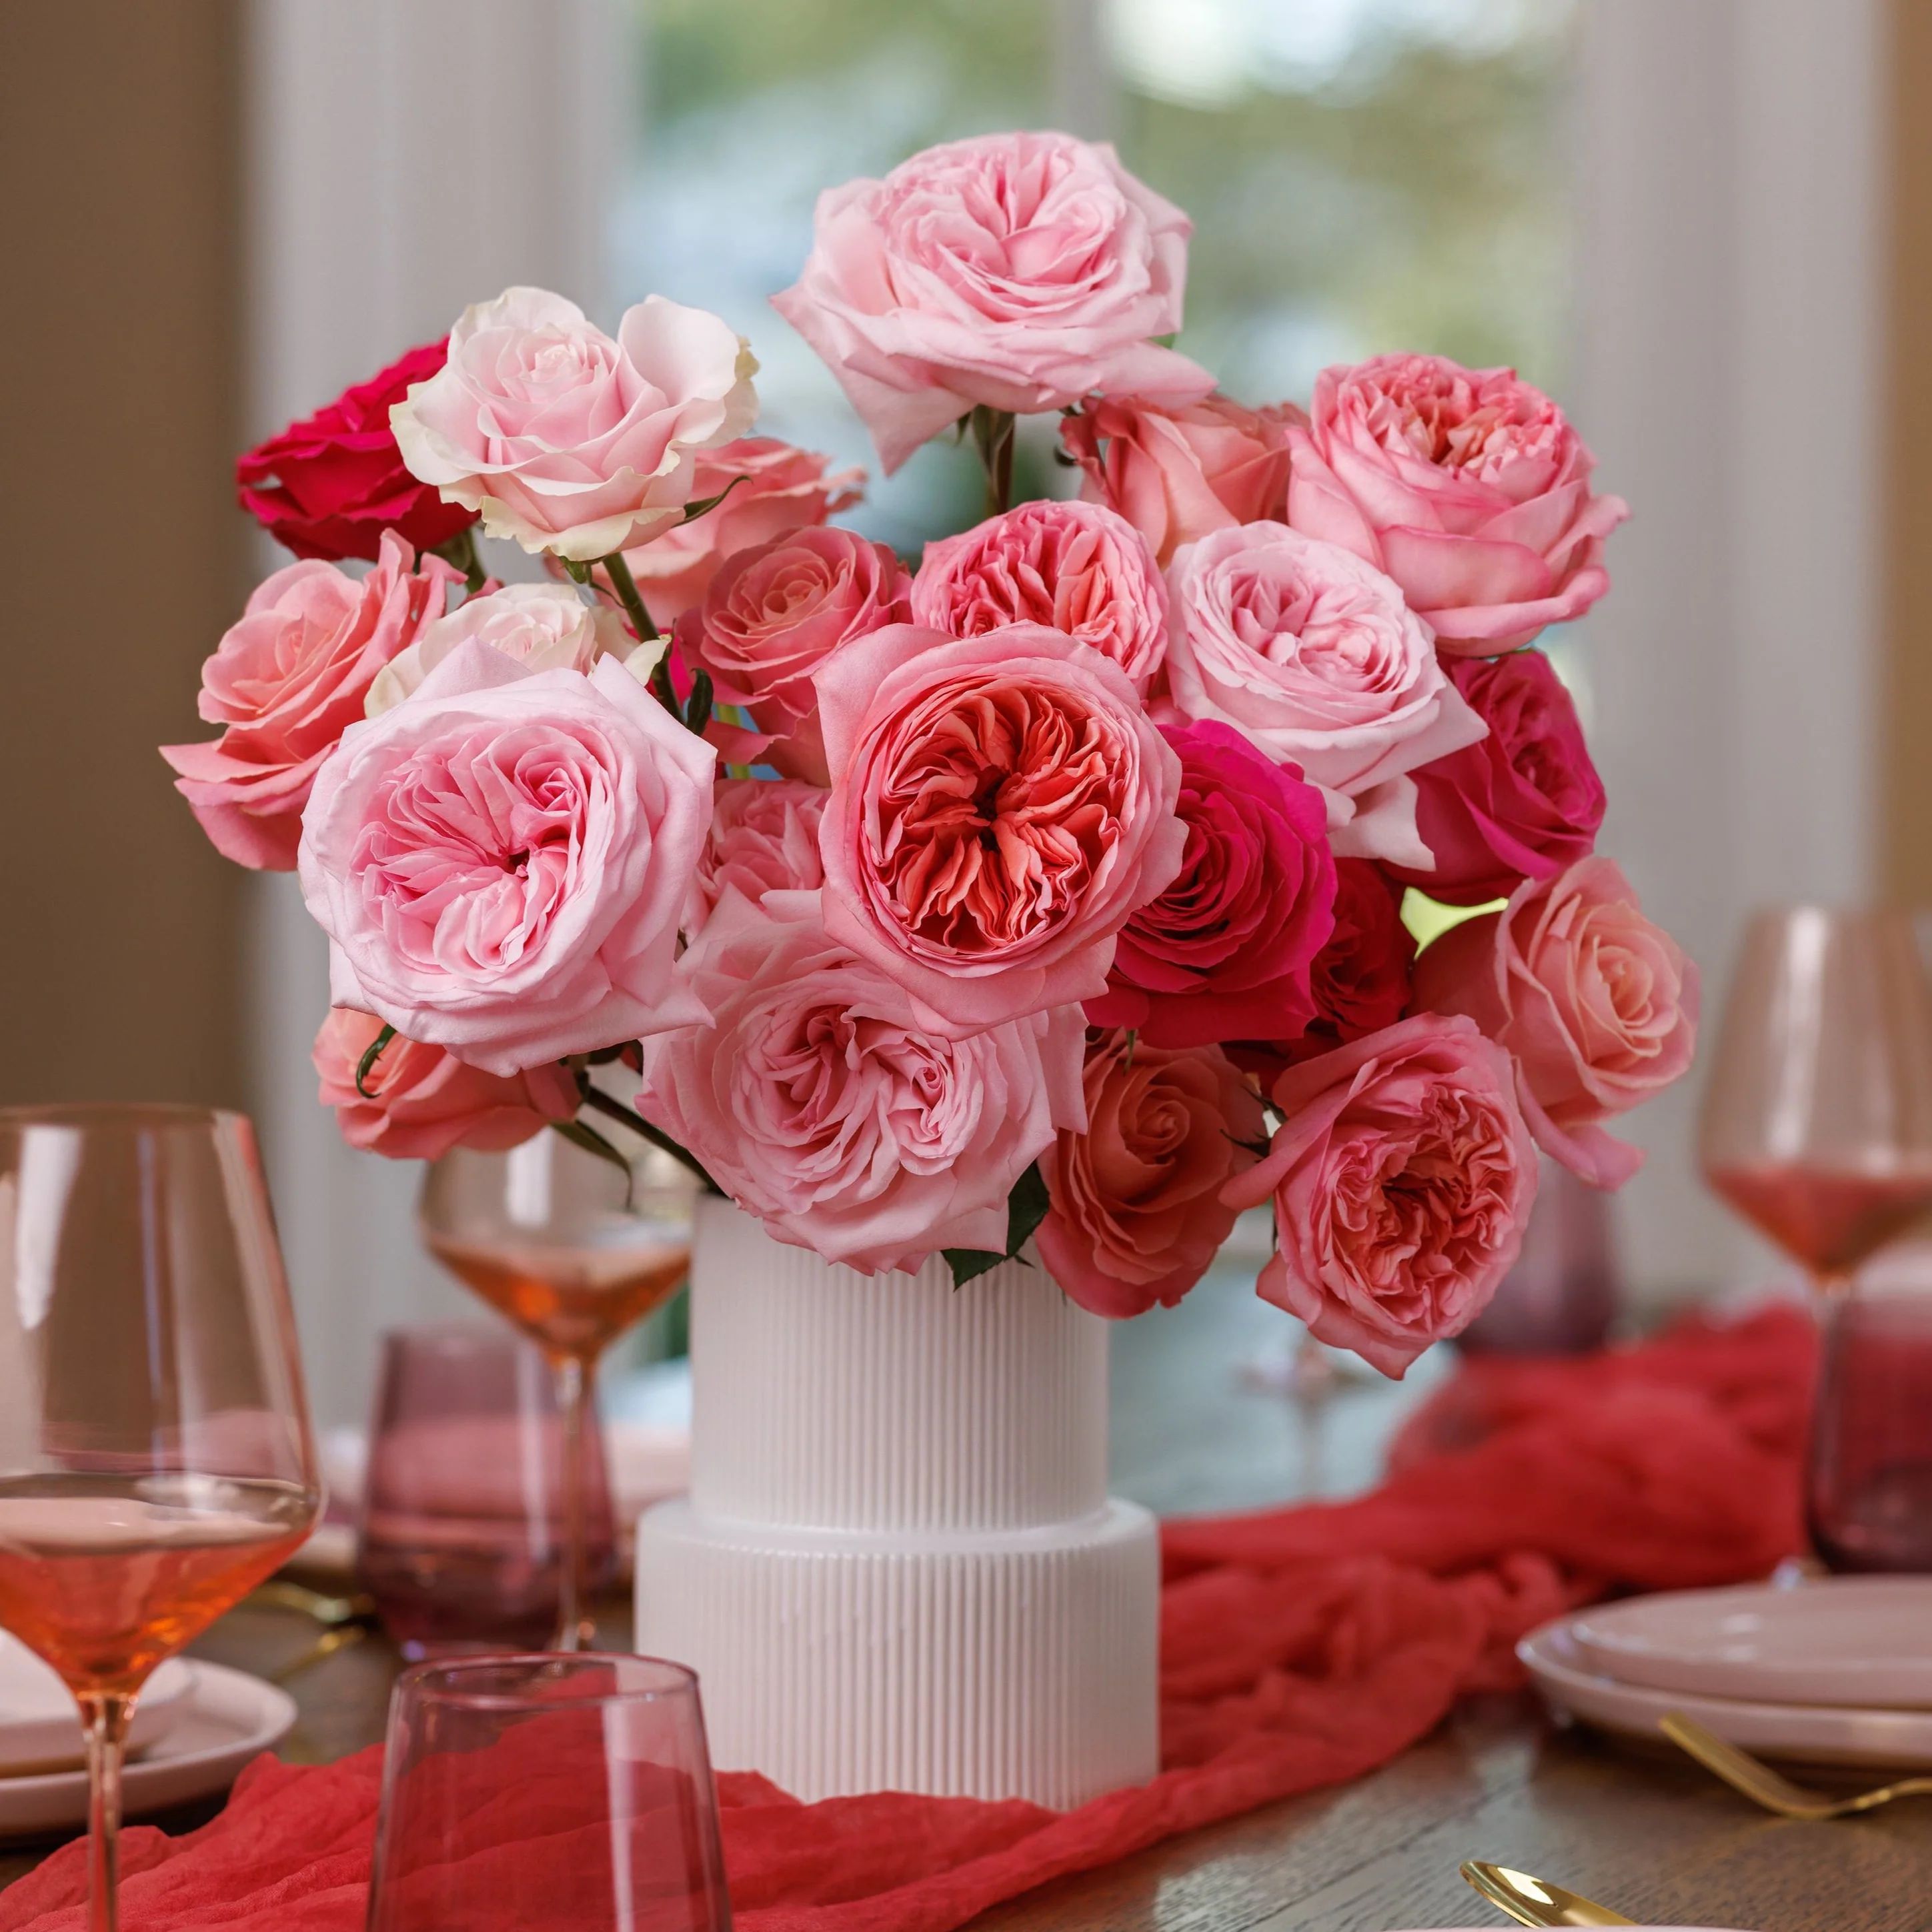 Gorgeous | grace rose farm